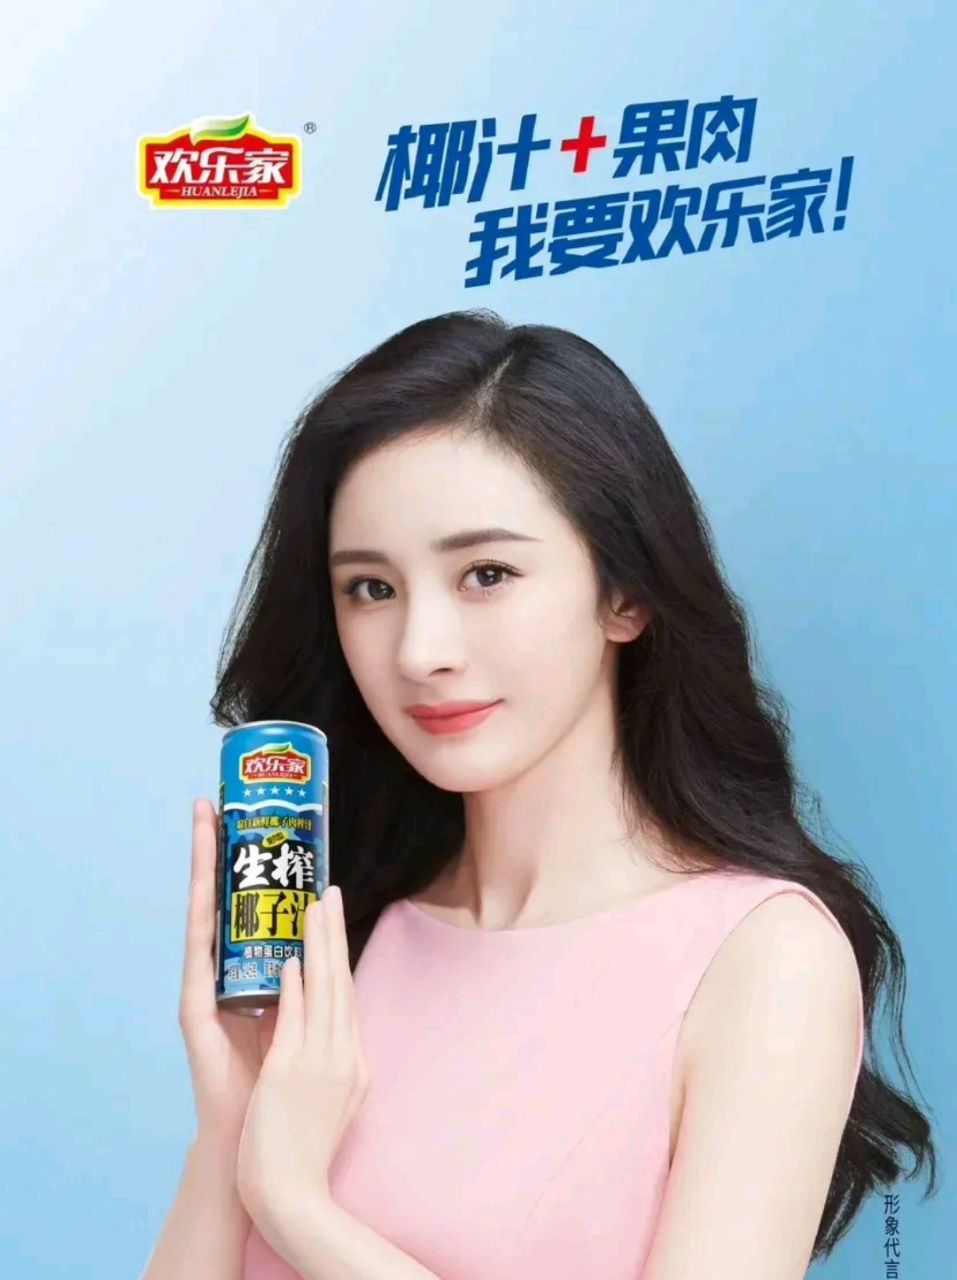 近日,杨幂代言某品牌椰汁,难免会让她跟徐冬冬代言的某品牌椰汁进行